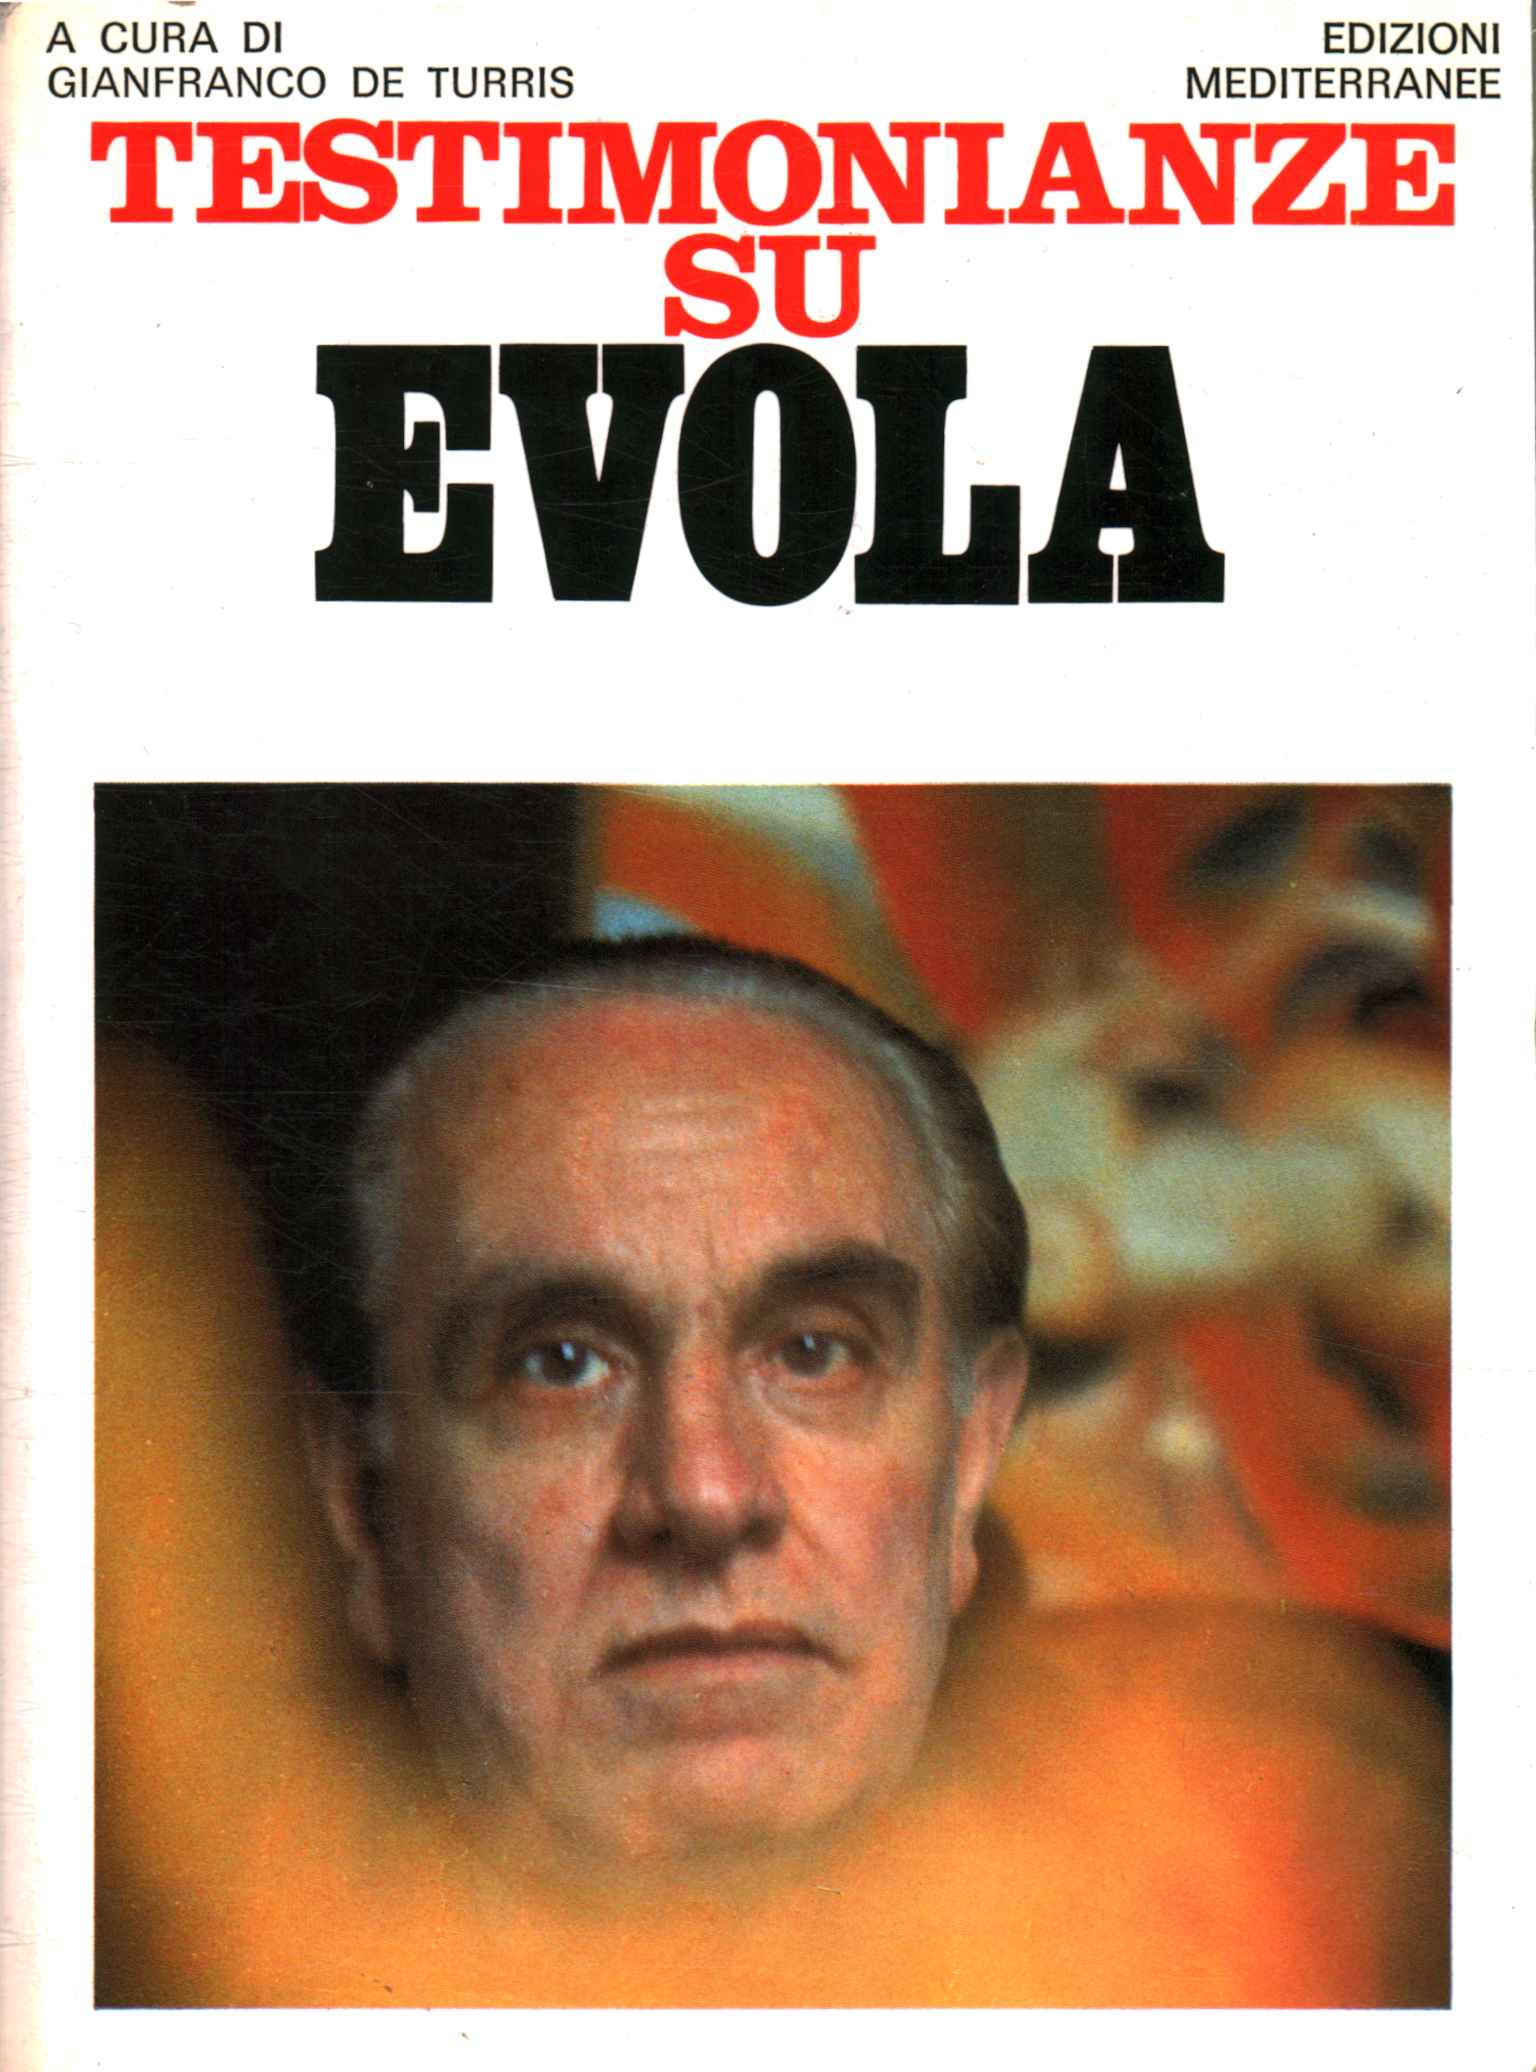 Testimonials about Evola